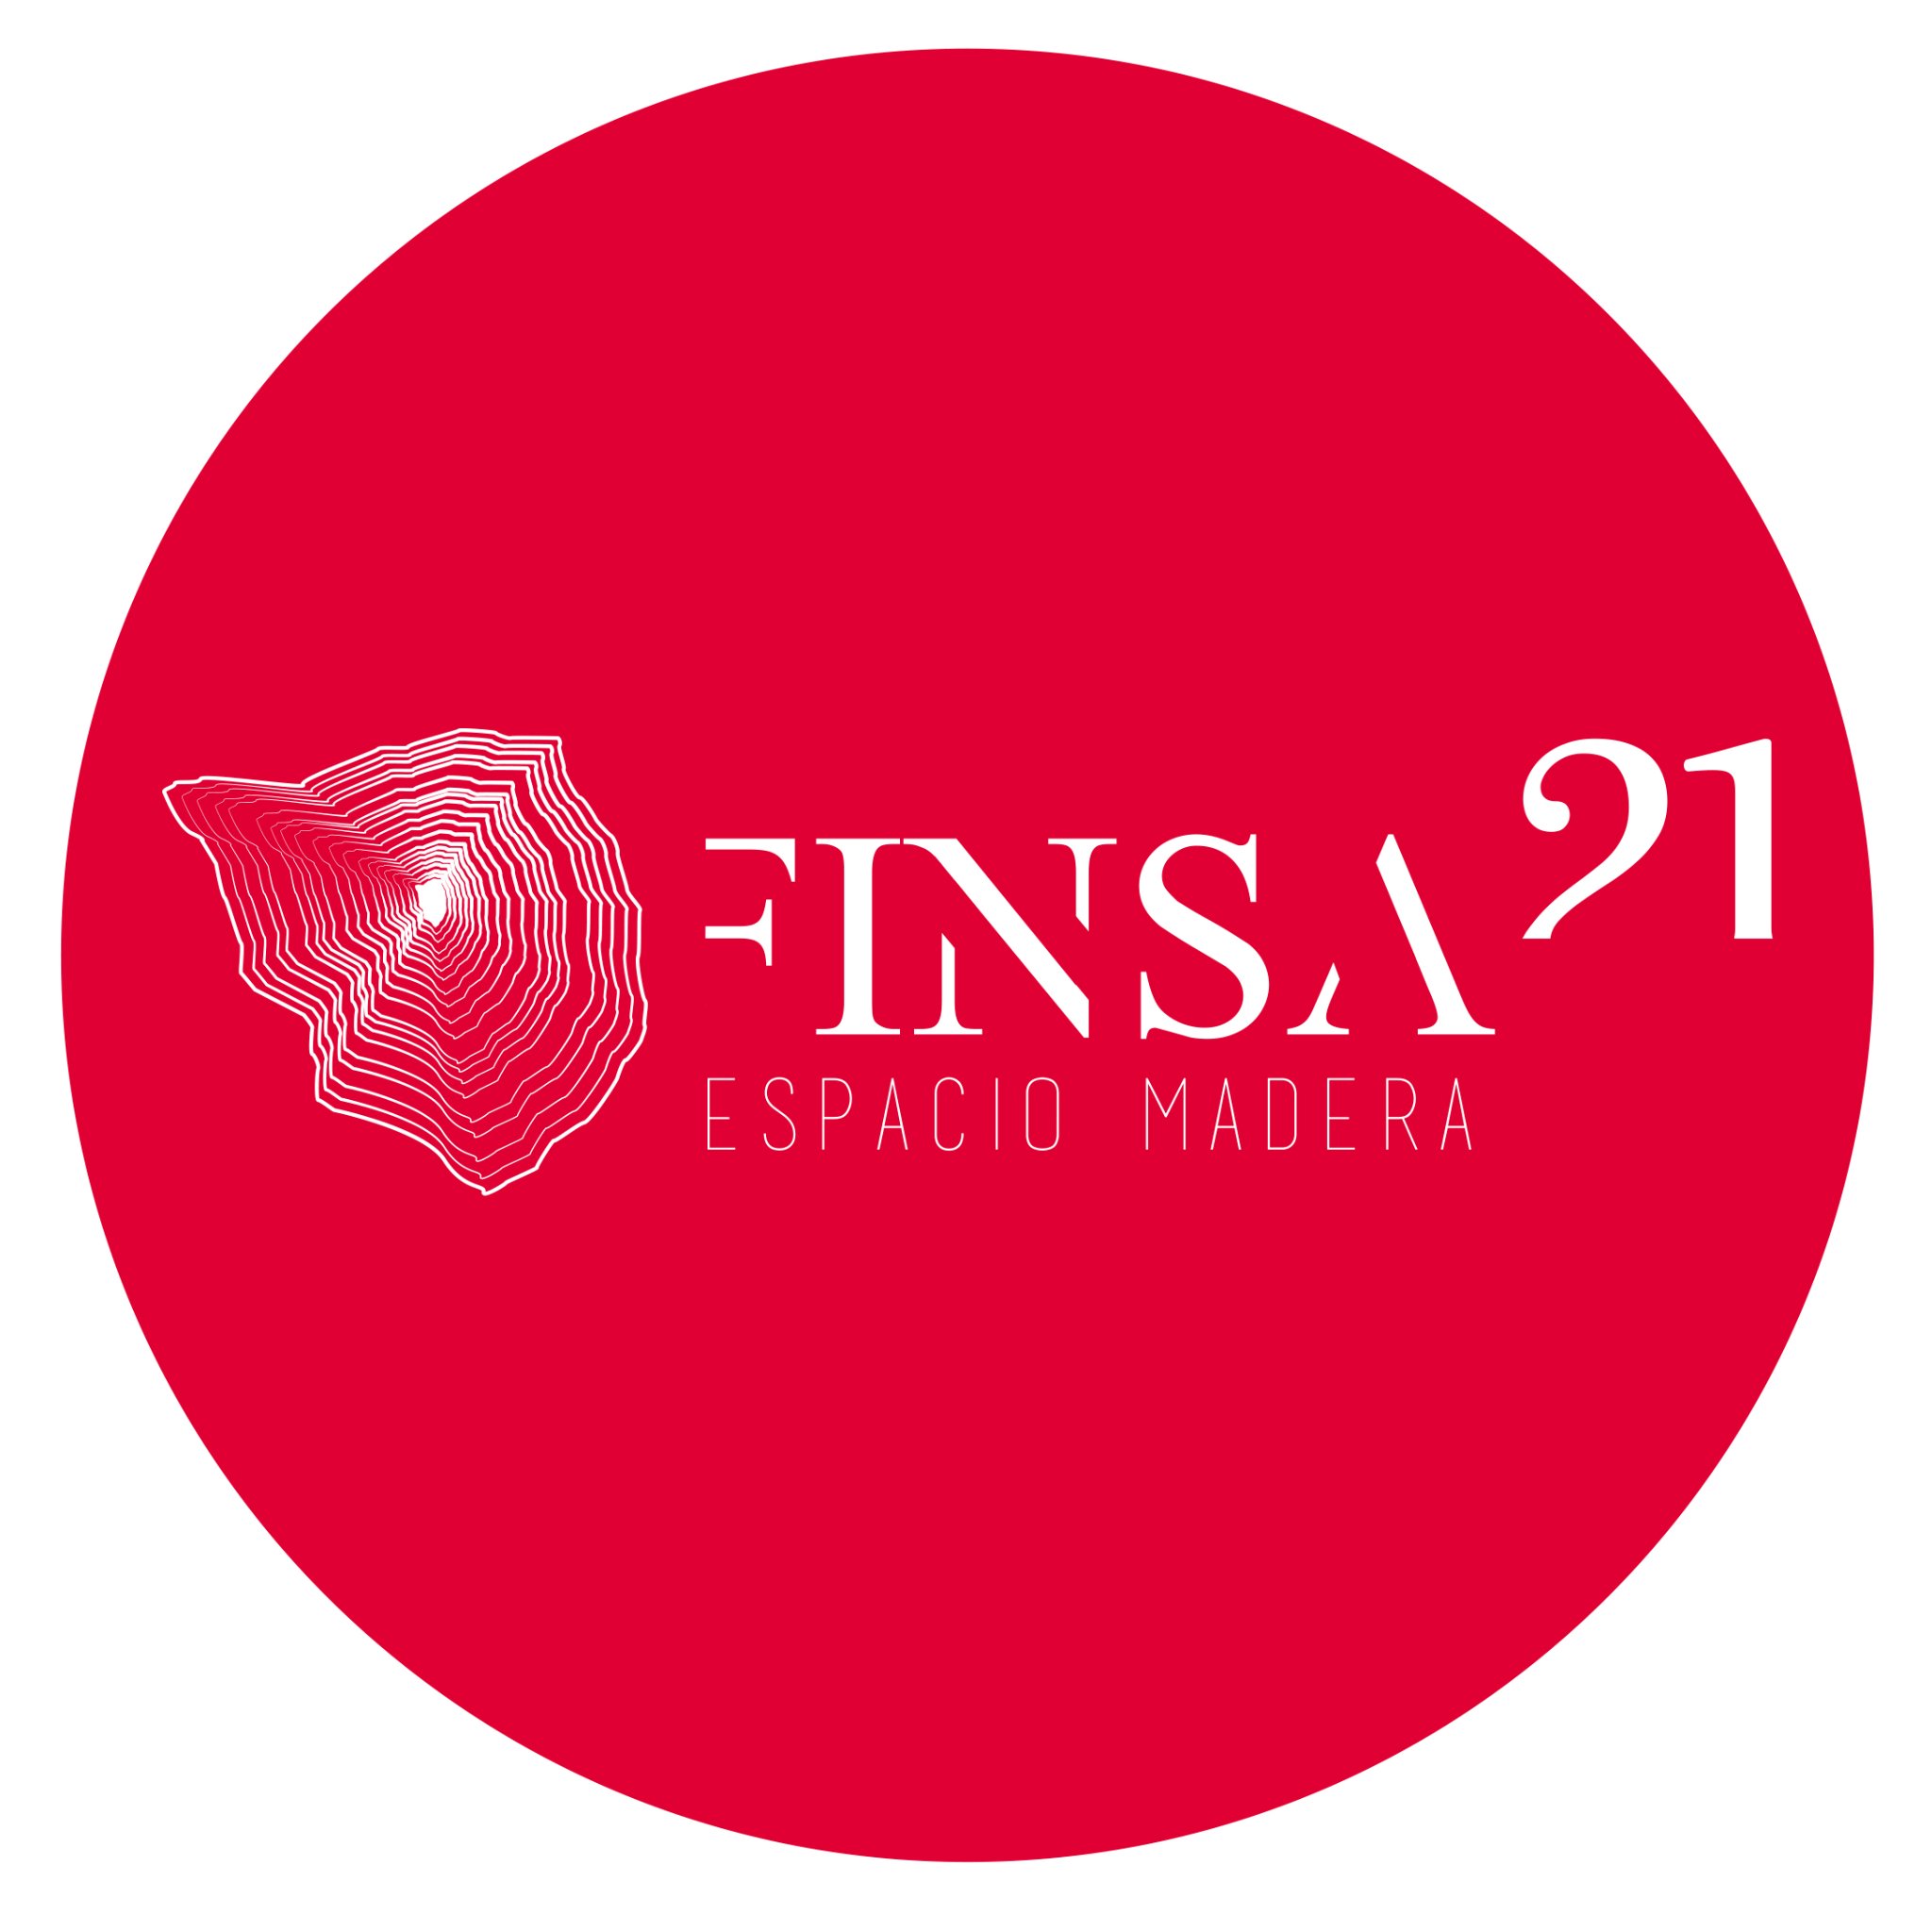 Finsa21 es un espacio dinámico, abierto a los profesionales de la #arquitectura y el #diseño para trabajar y crear en torno a la #madera. C/Maudes, 21, Madrid